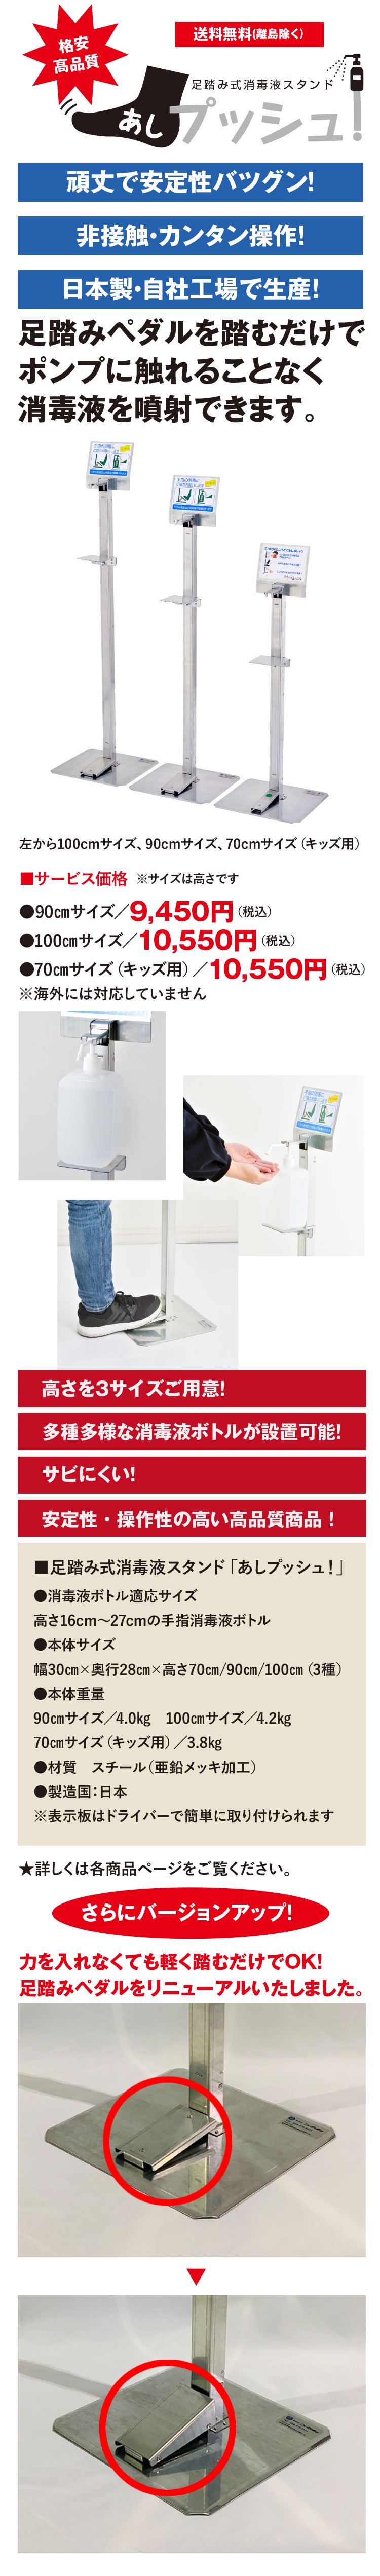 足踏み式消毒液スタンド「あしプッシュ！」は日本で生産し、低価格でご提供。スチール製で安定性バツグン。足でペダルを踏めば、ポンプ式消毒液ボトルから消毒液(アルコール)が噴射され、非接触で衛生的。高さ調節も可能で、市販の消毒液であればほとんどが設置可能。